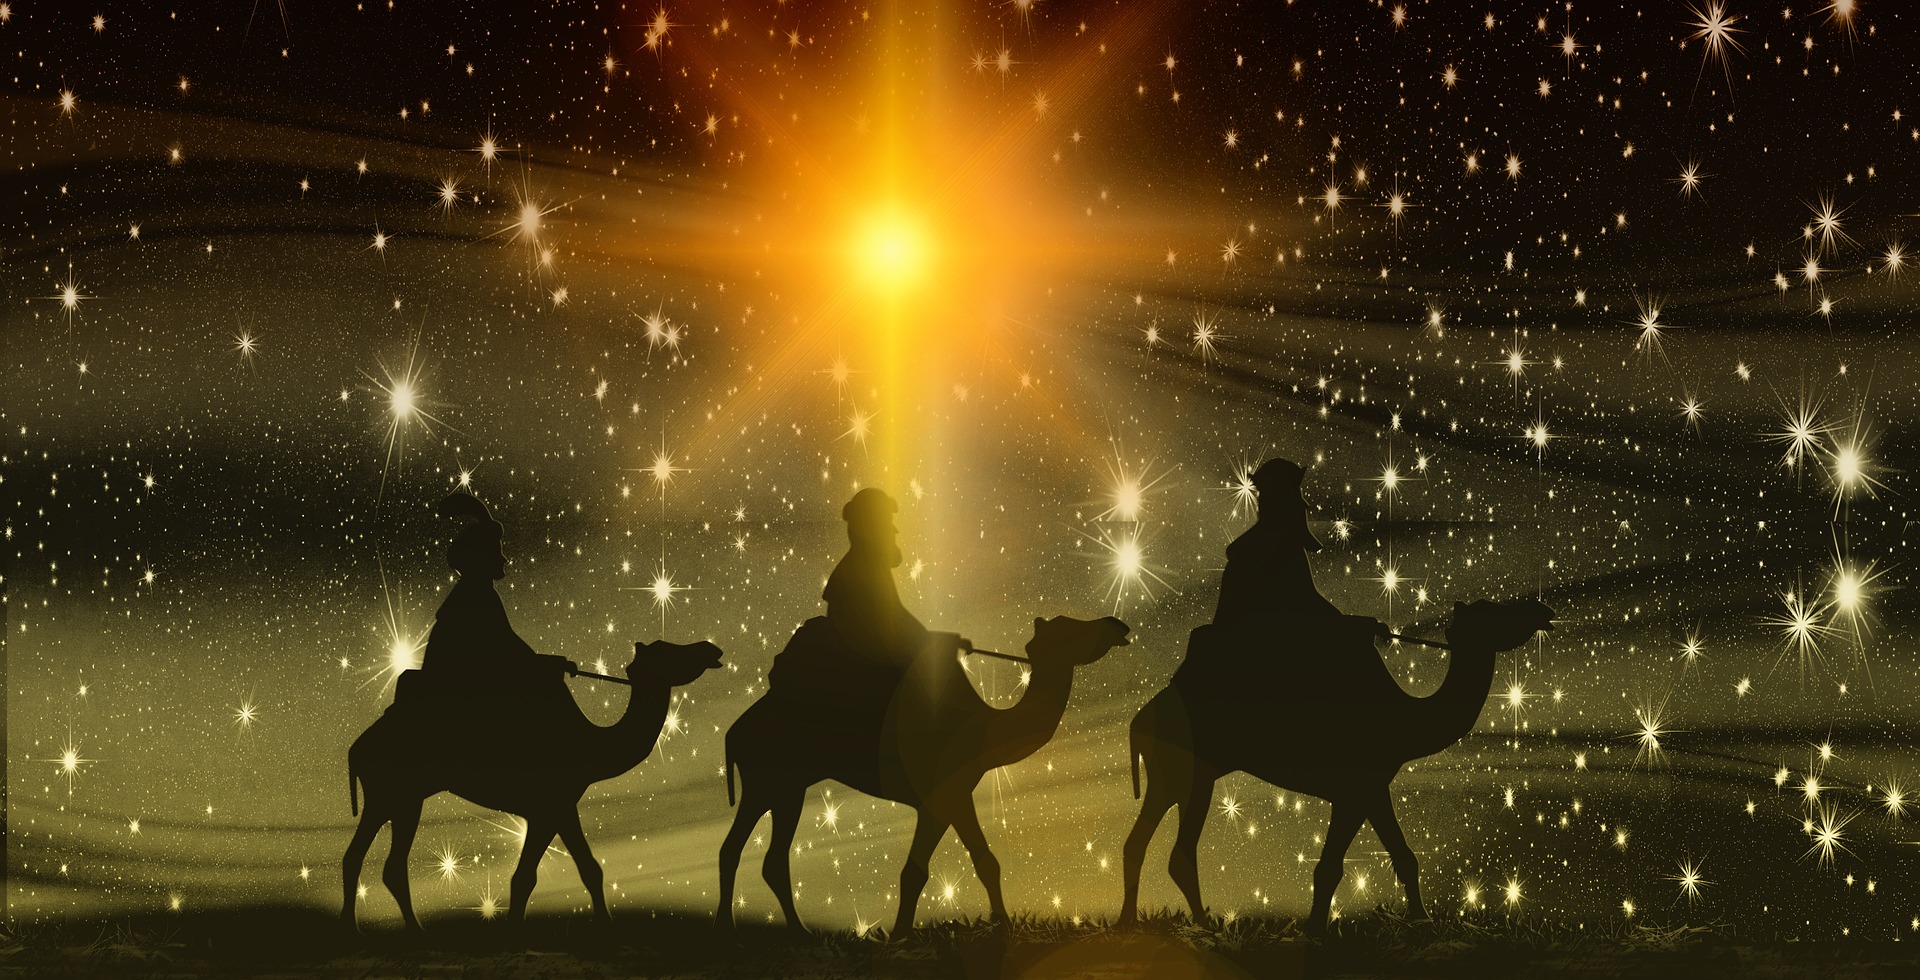 Trzej królowie przemierzający na wielbłądach drogę rozświetloną gwiazdą